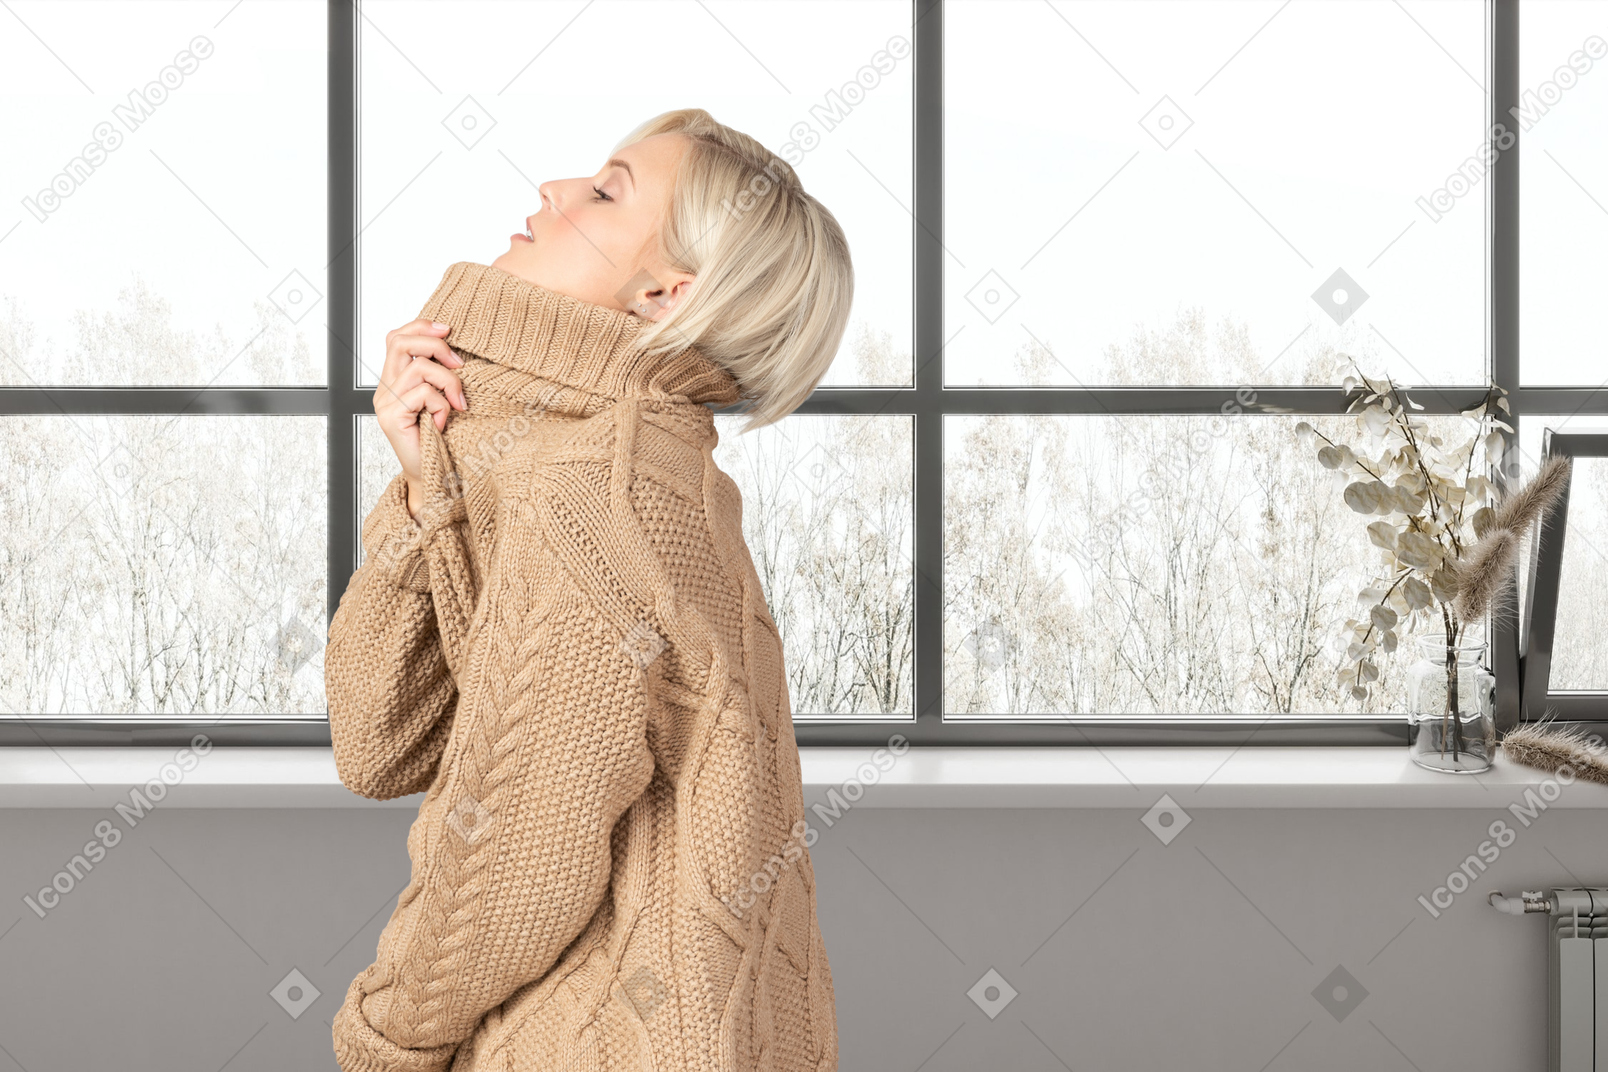 Frau in einem warmen pullover, die am fenster steht